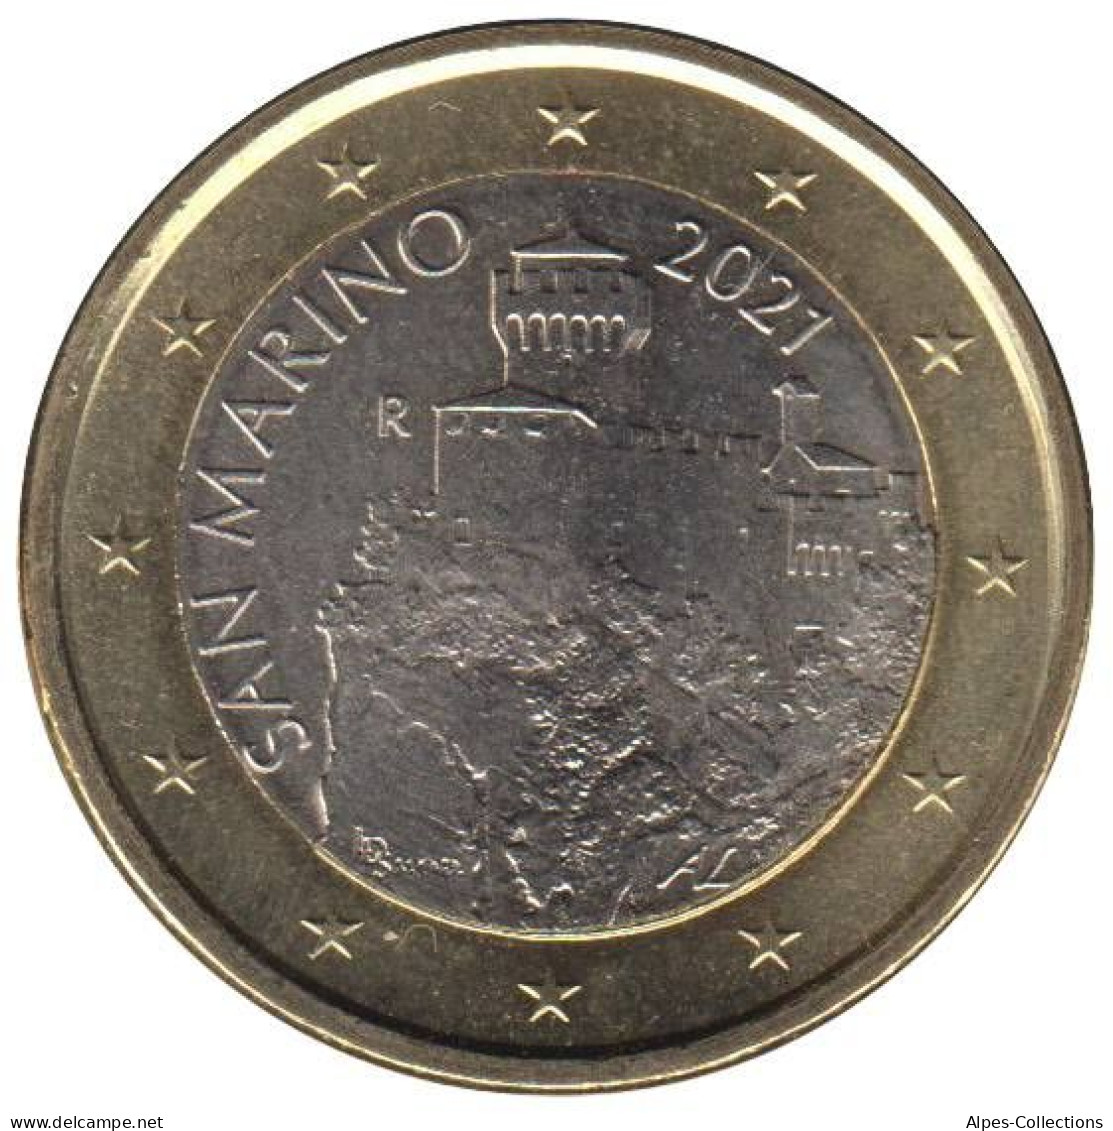 SA10021.1 - SAINT MARIN - 1 Euro - 2021 - San Marino